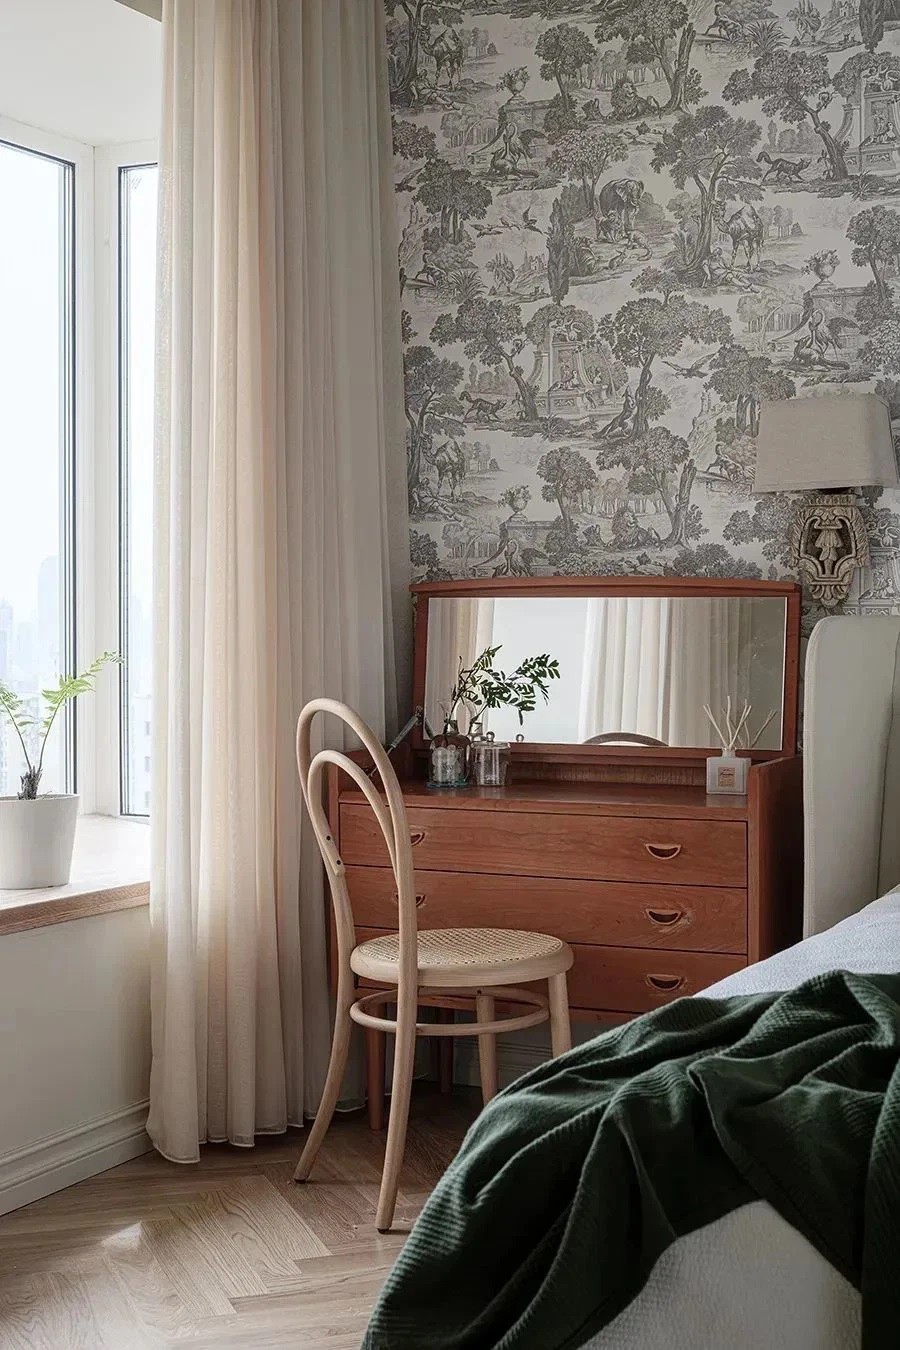 
Phía đầu giường được trang trí bằng giấy dán tường có hoa văn cổ điển làm điểm nhấn, tăng sự lãng mạn cho không gian riêng tư của hai vợ chồng
